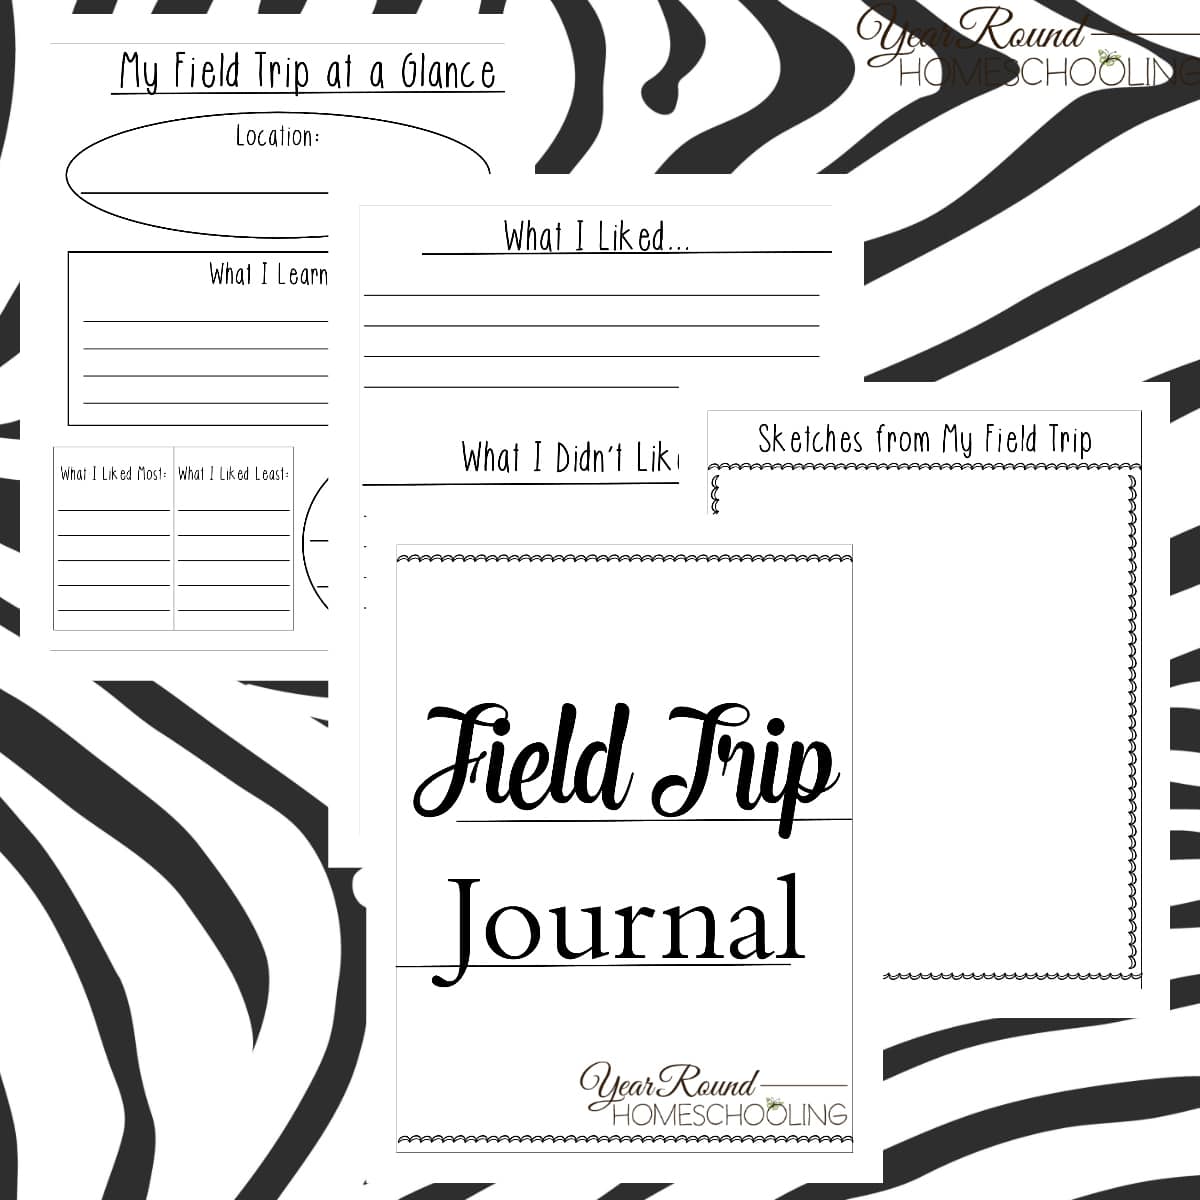 Field Trip Journal By Year Round HomeschoolingIG Year Round